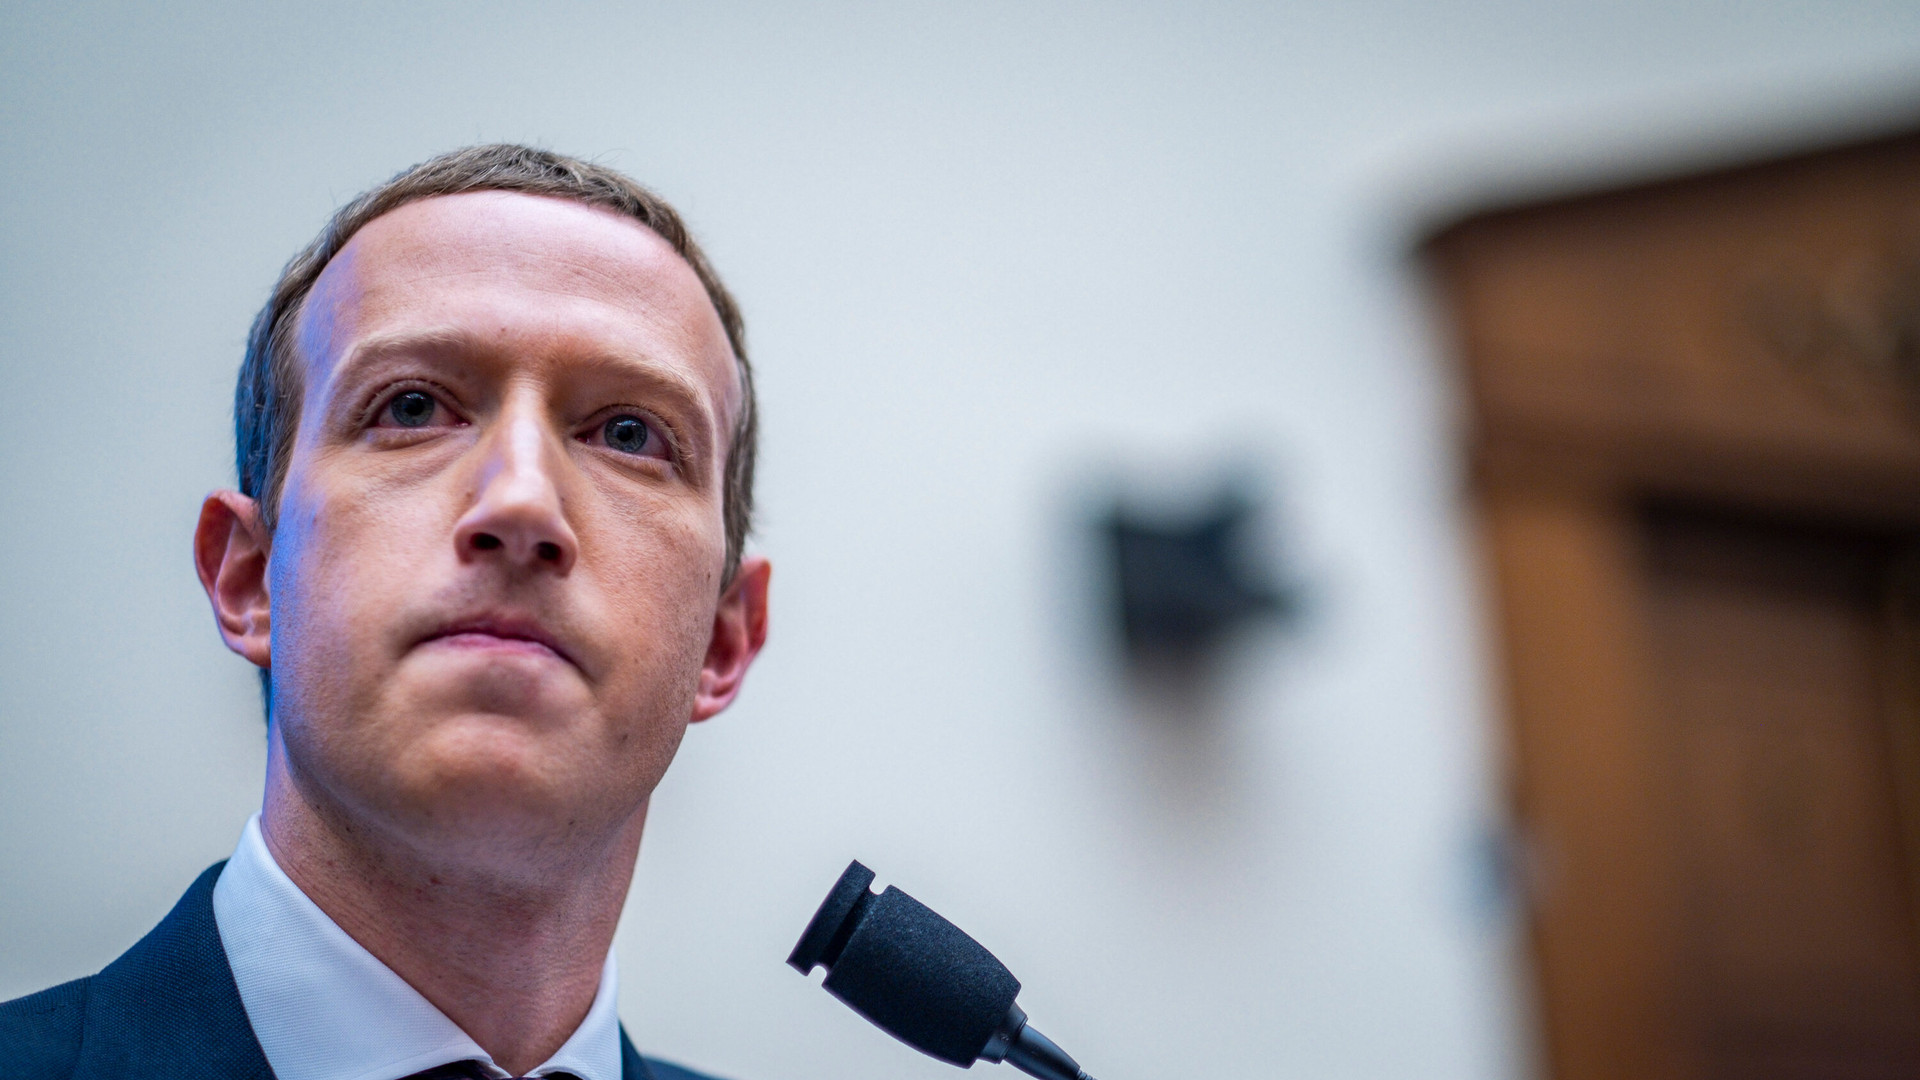 Chạy theo vũ trụ ảo, Mark Zuckerberg bỏ lơ Facebook đang ‘biến chất’: Tràn ngập spam, người dùng than phiền newsfeed quá nhiều ‘rác’ - Ảnh 2.